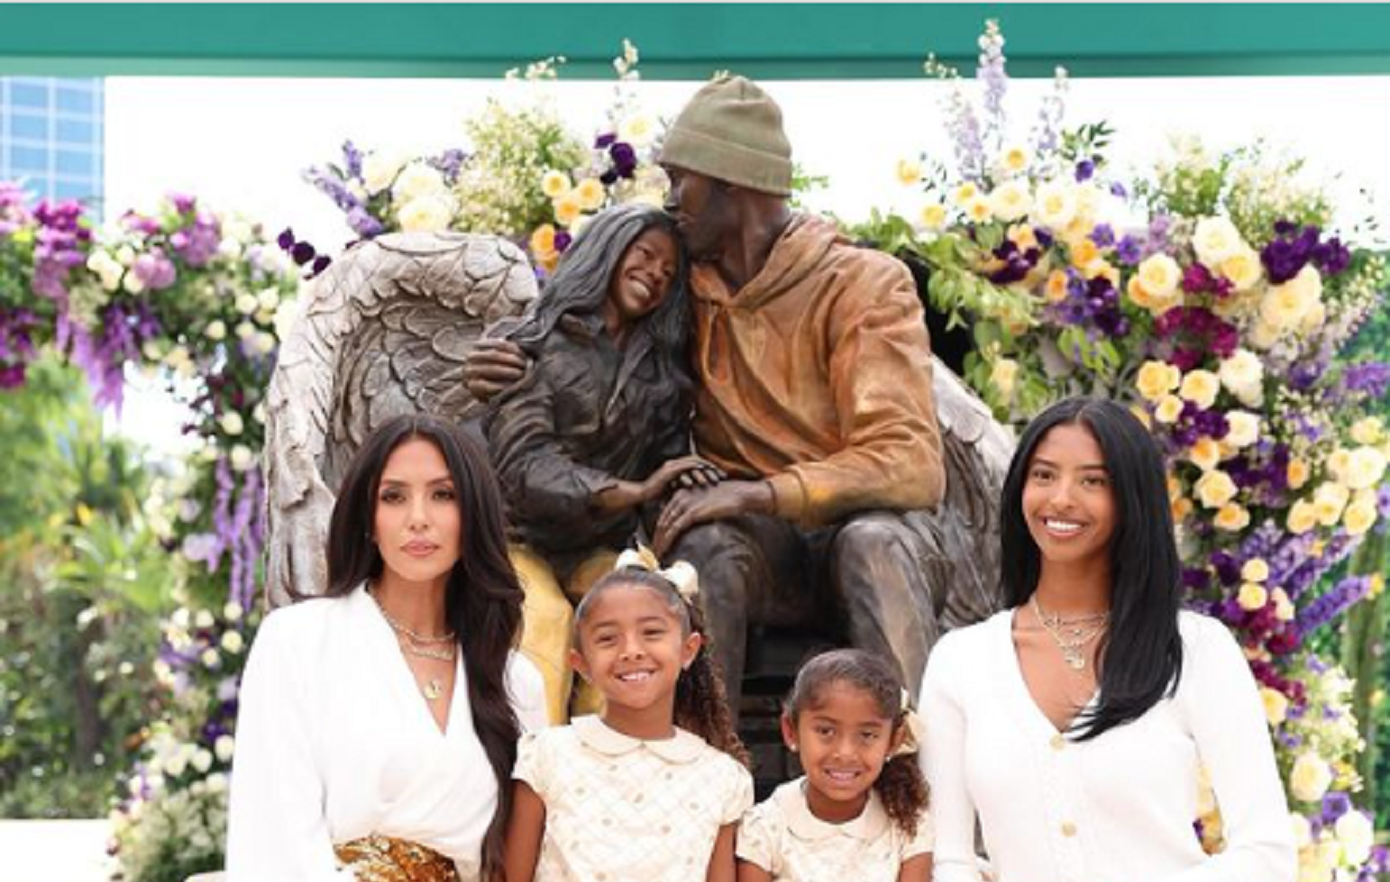 Οι Λέικερς αποκάλυψαν άγαλμα προς τιμήν του Κόμπι Μπράιαντ &#8211; Αγκαλιάζει την κόρη του Τζιάνα που έχει φτερά αγγέλου